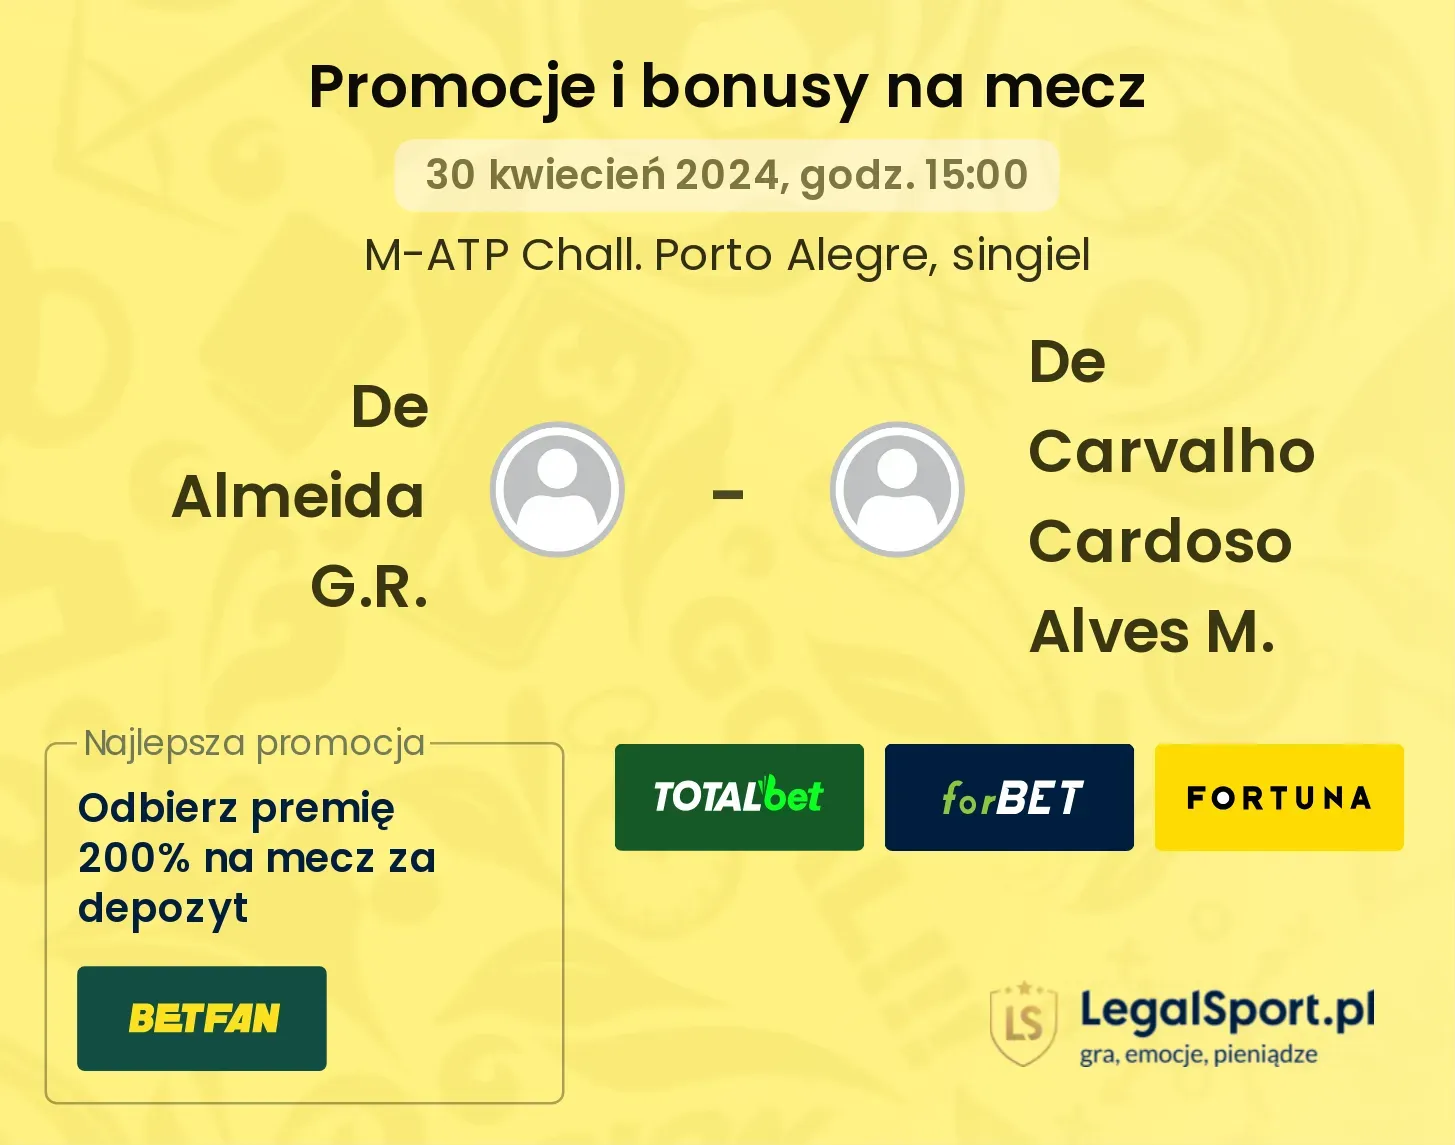 De Almeida G.R. - De Carvalho Cardoso Alves M. promocje bonusy na mecz